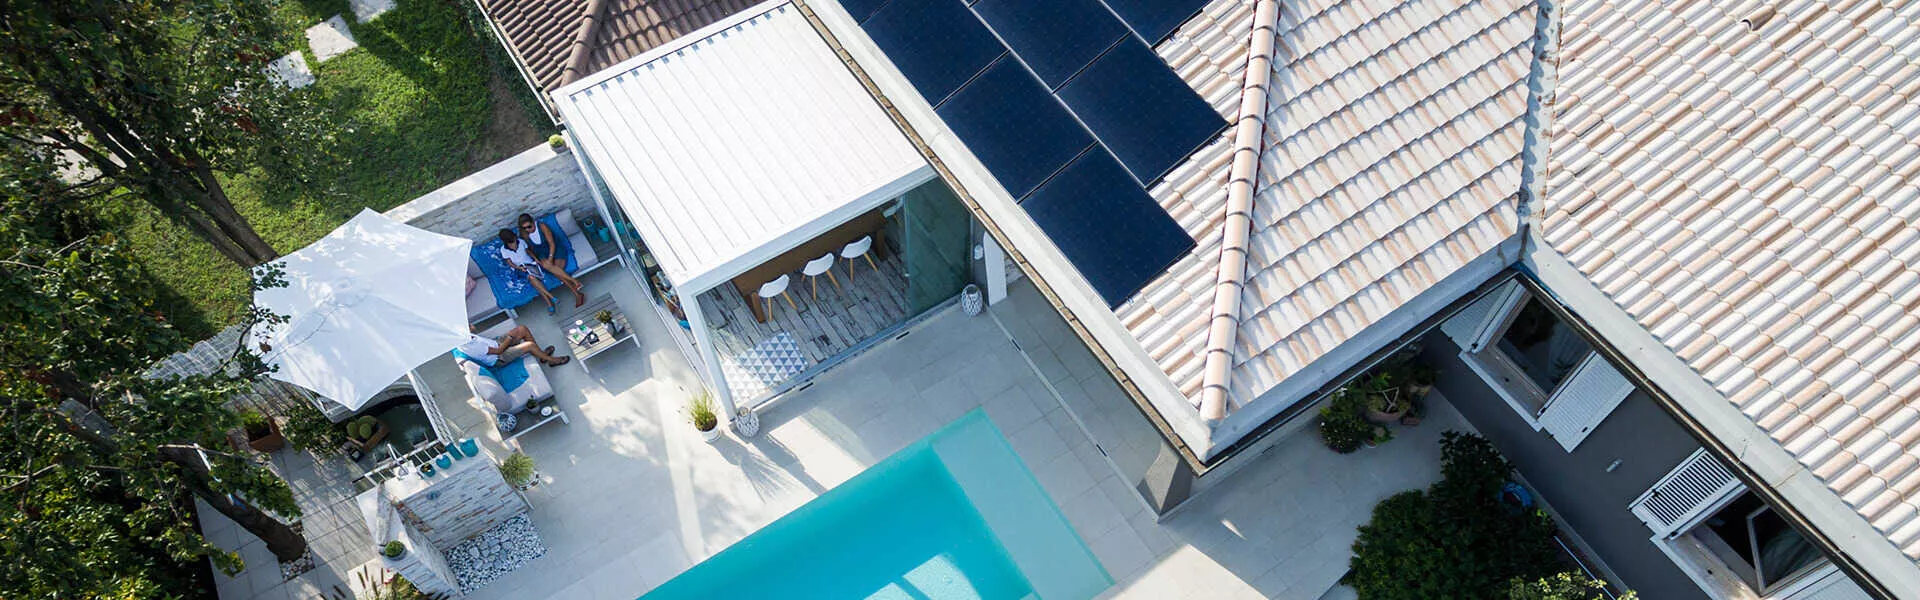  casa con piscina e pannelli fotovoltaici sunpower